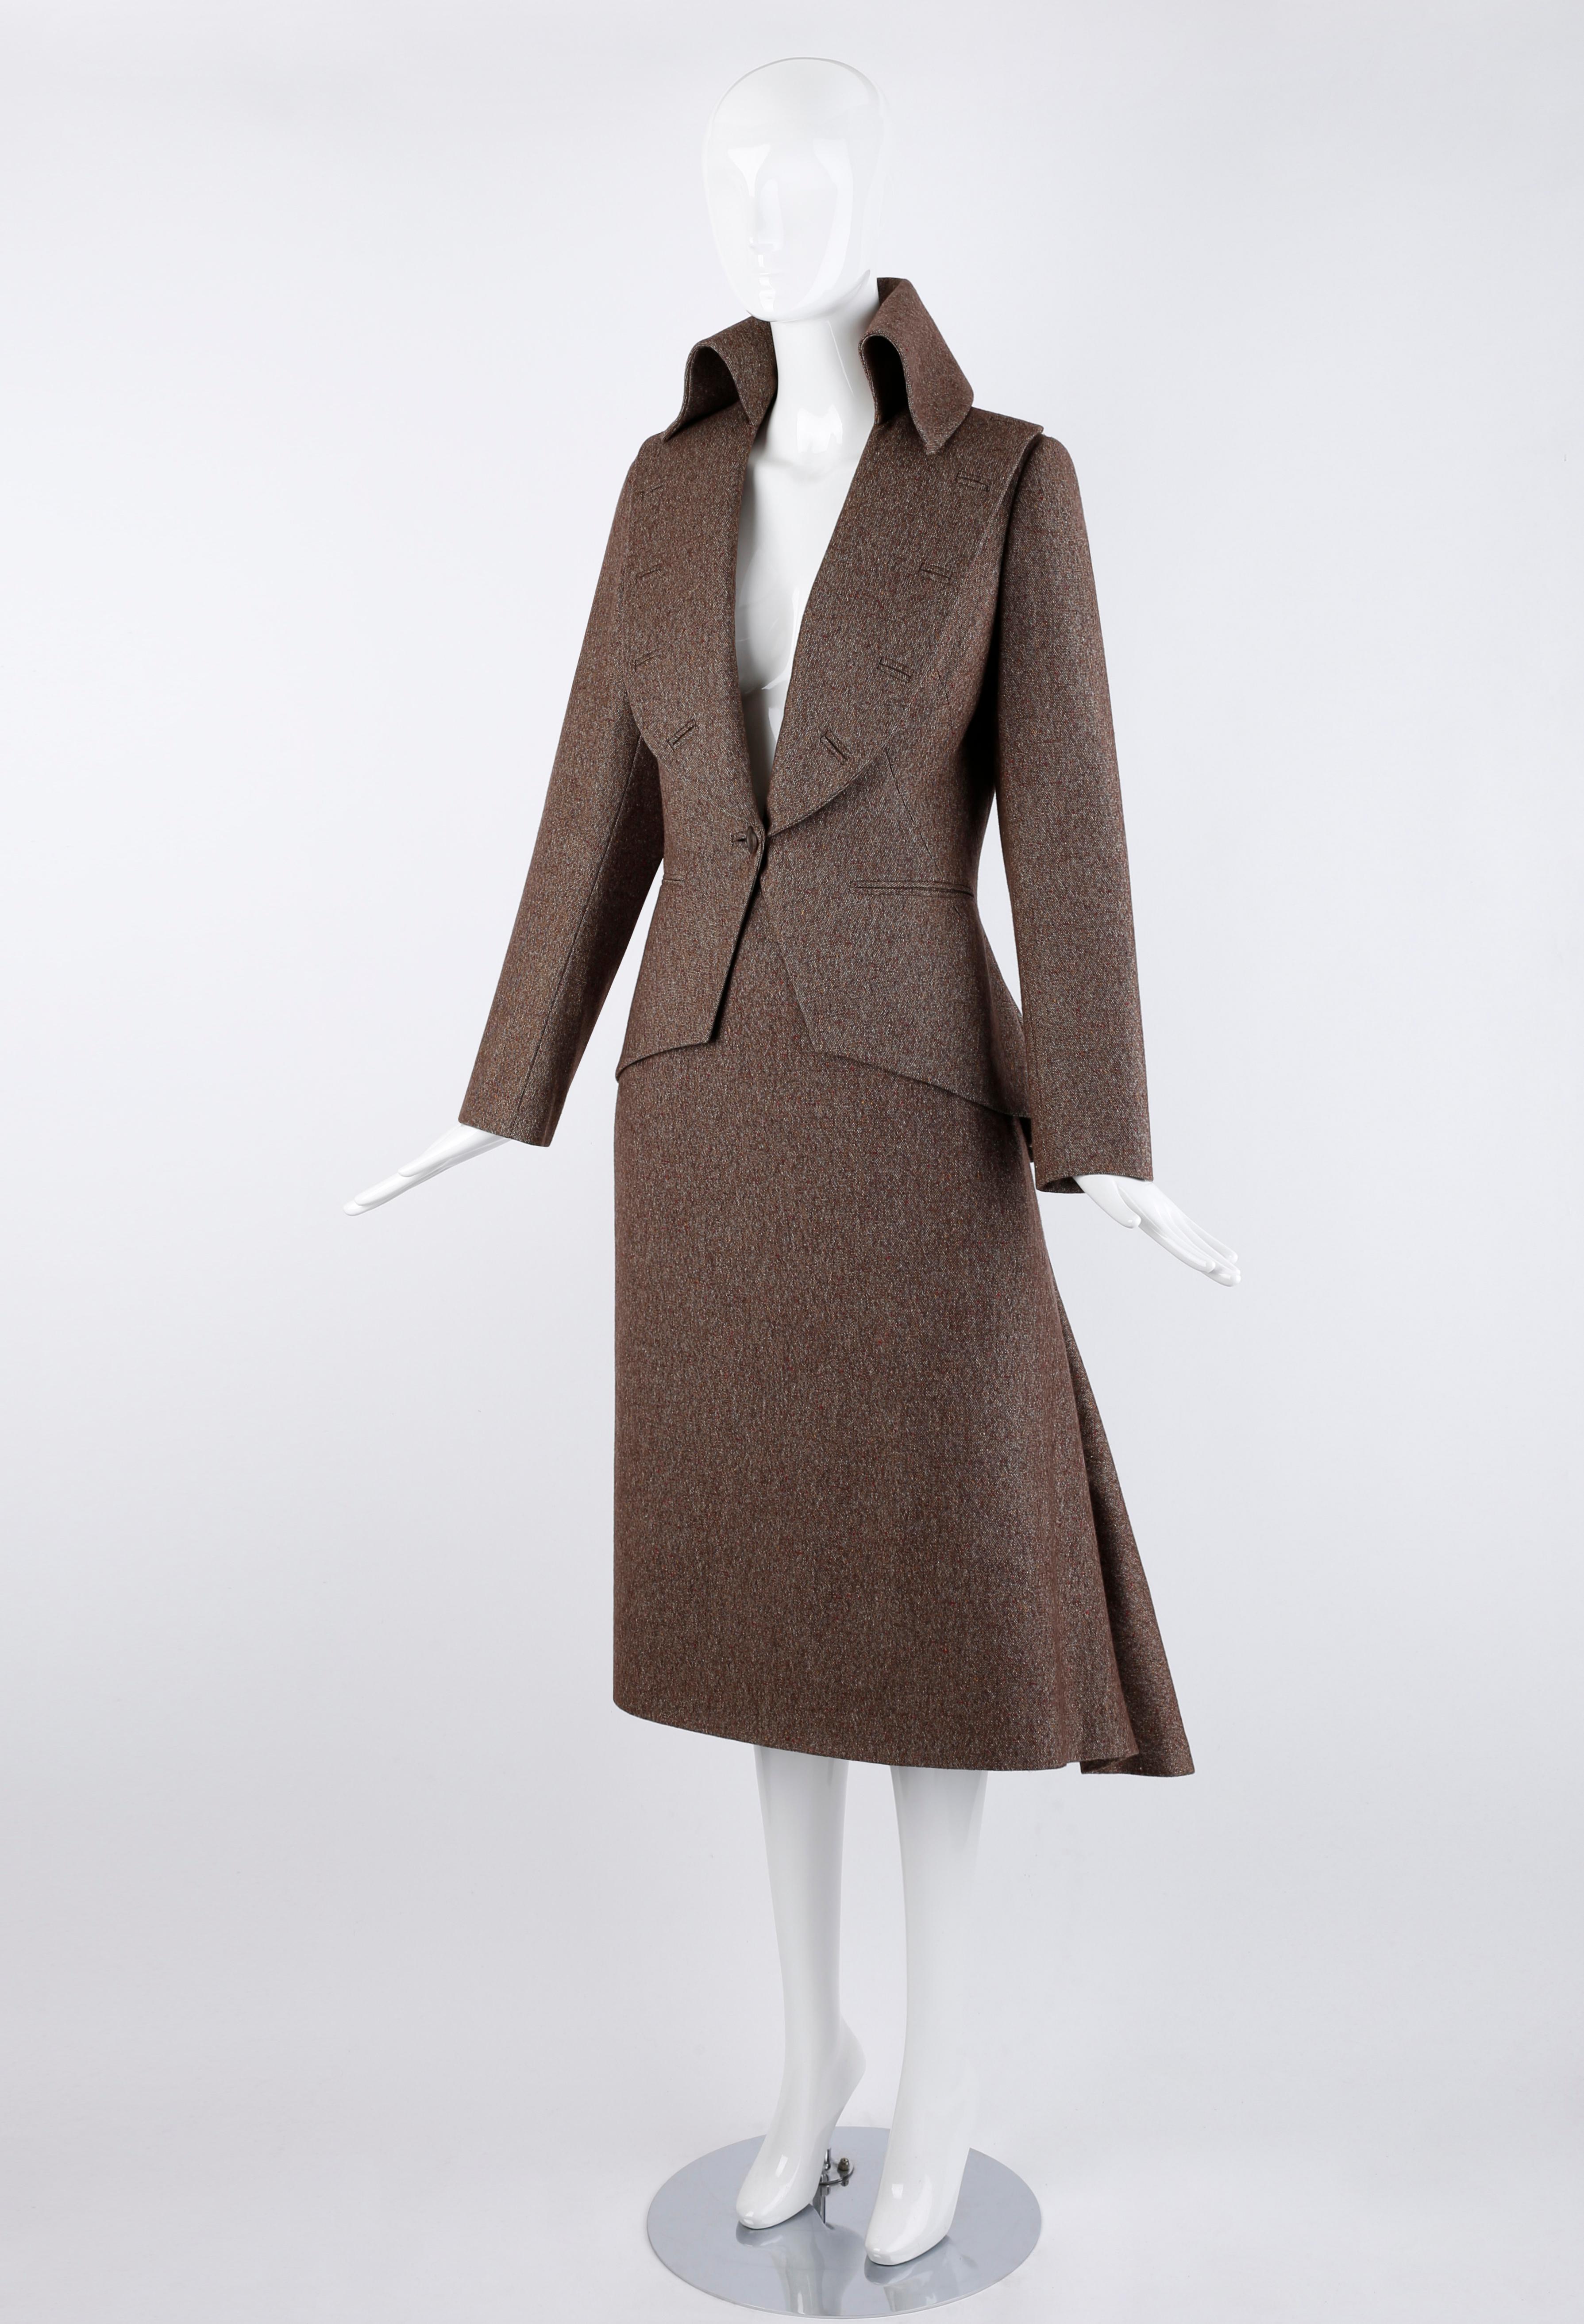 Conçue par Alexander McQueen pour la collection automne/hiver 2006 ; look #15. Ce magnifique tailleur en laine mélangée mouchetée est doté d'une jupe à taille haute et d'un plissé asymétrique au dos. La veste présente des revers spectaculaires et un